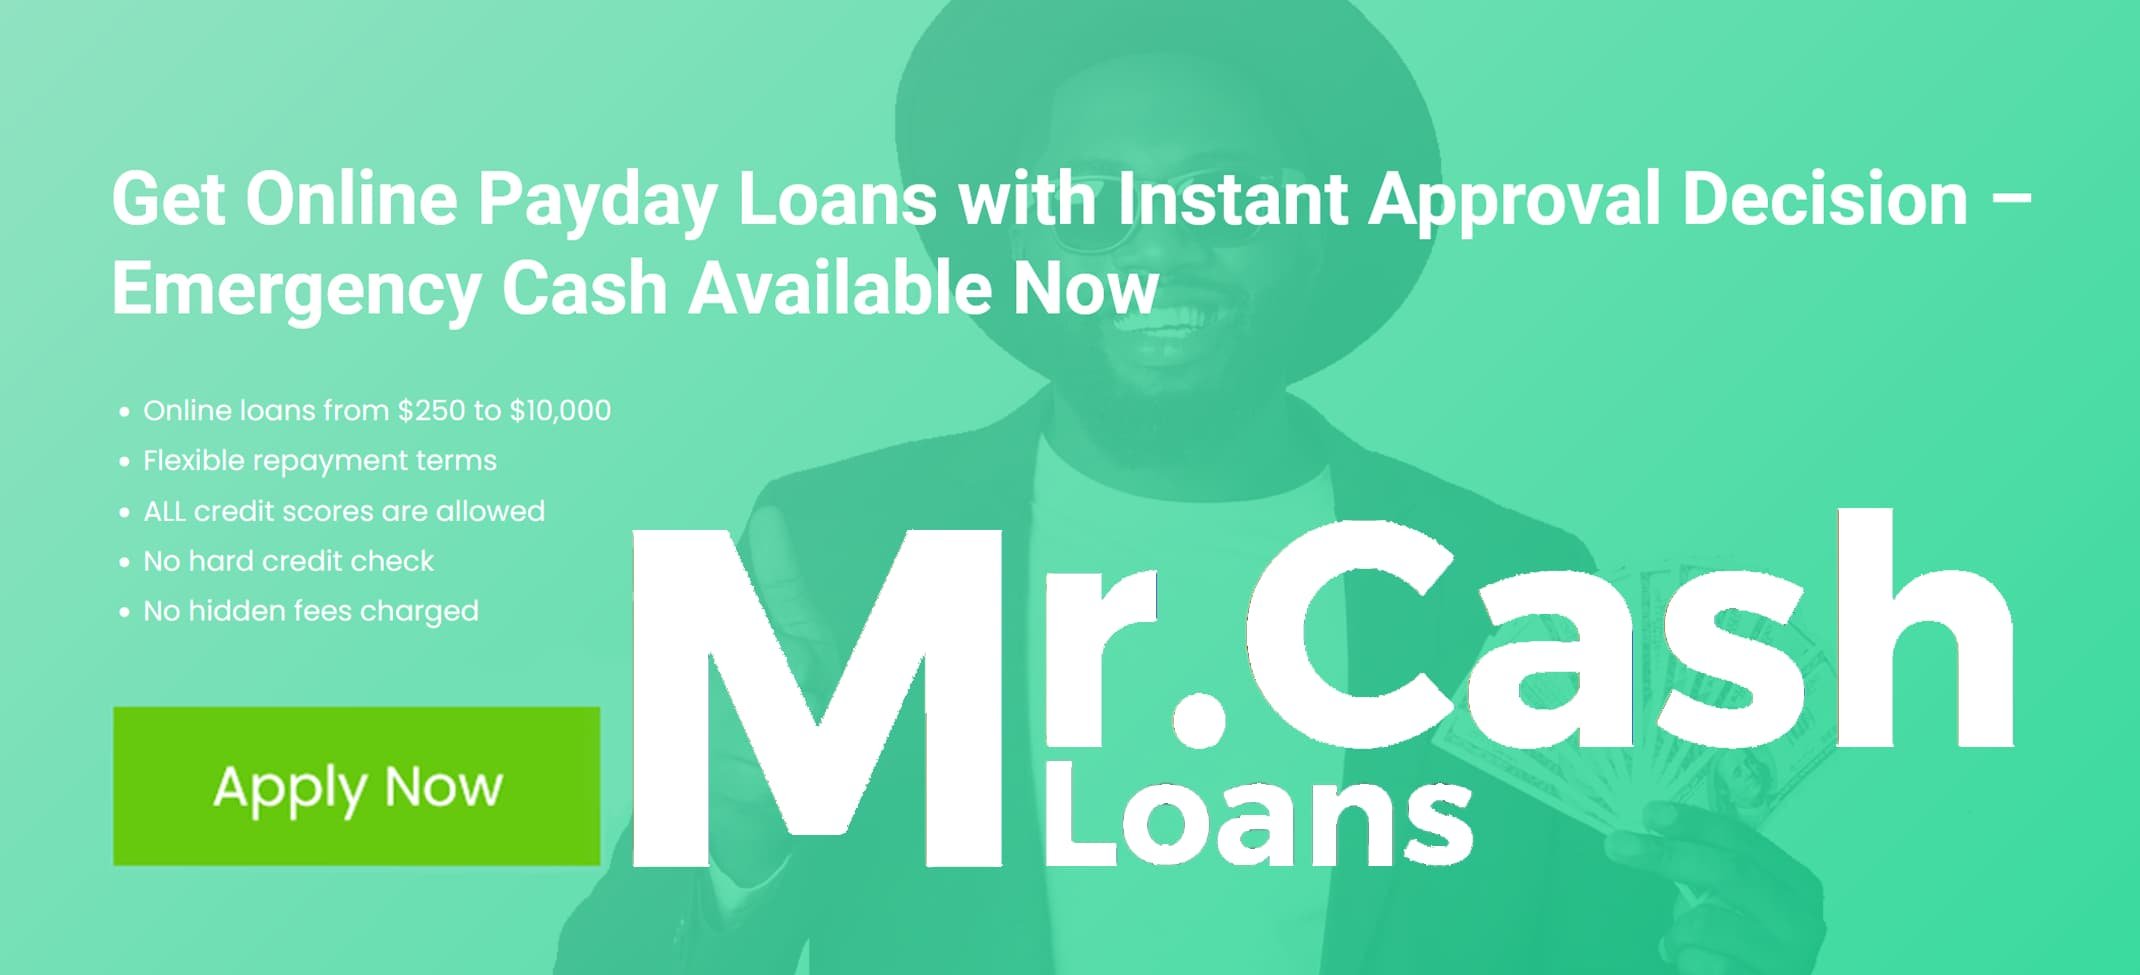 Mr. Cash Loans in Brockton, MA 02301 cover